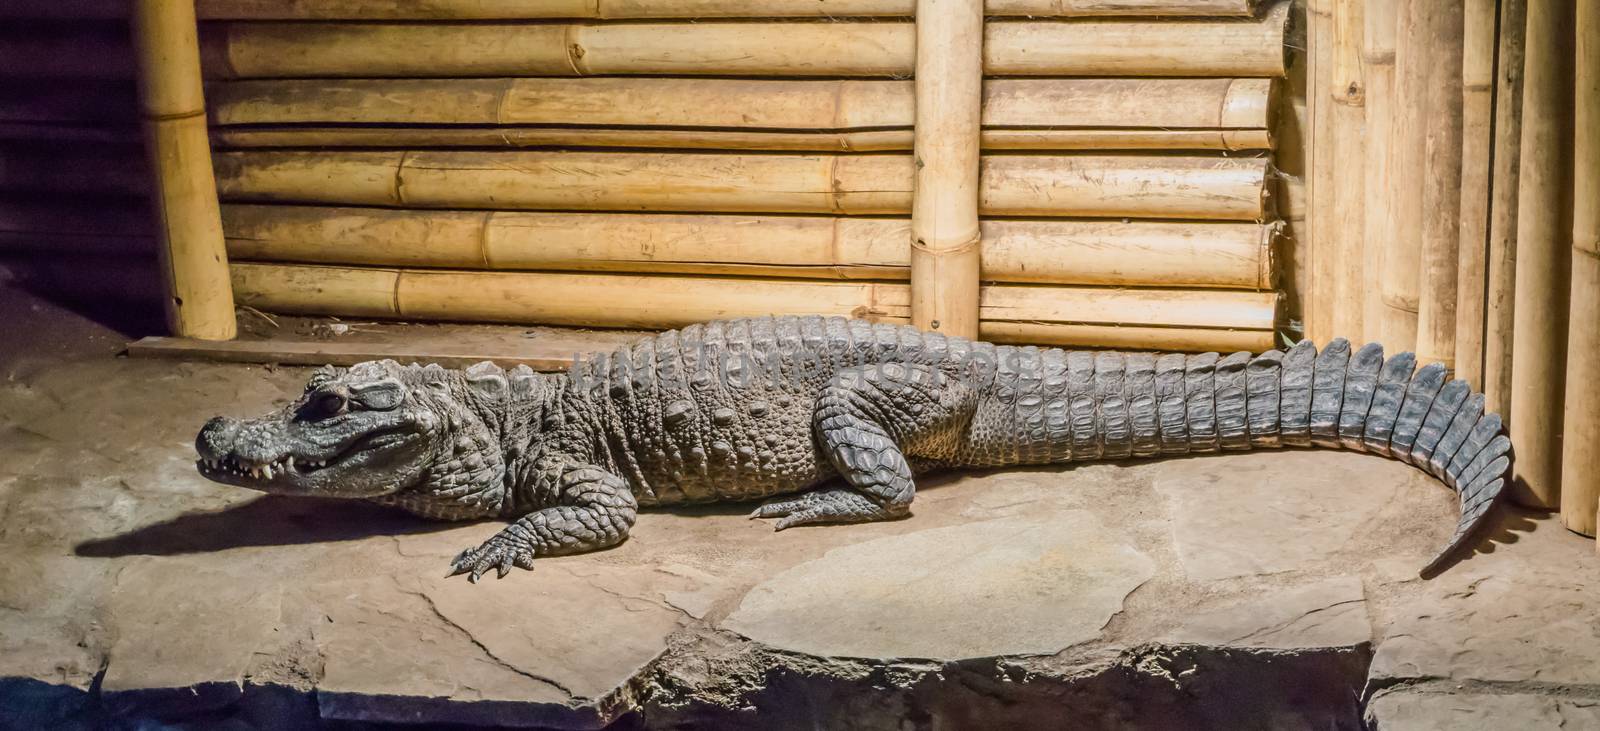 Adult african dwarf or bony crocodile sitting on a rock dangerous wildlife animal portrait